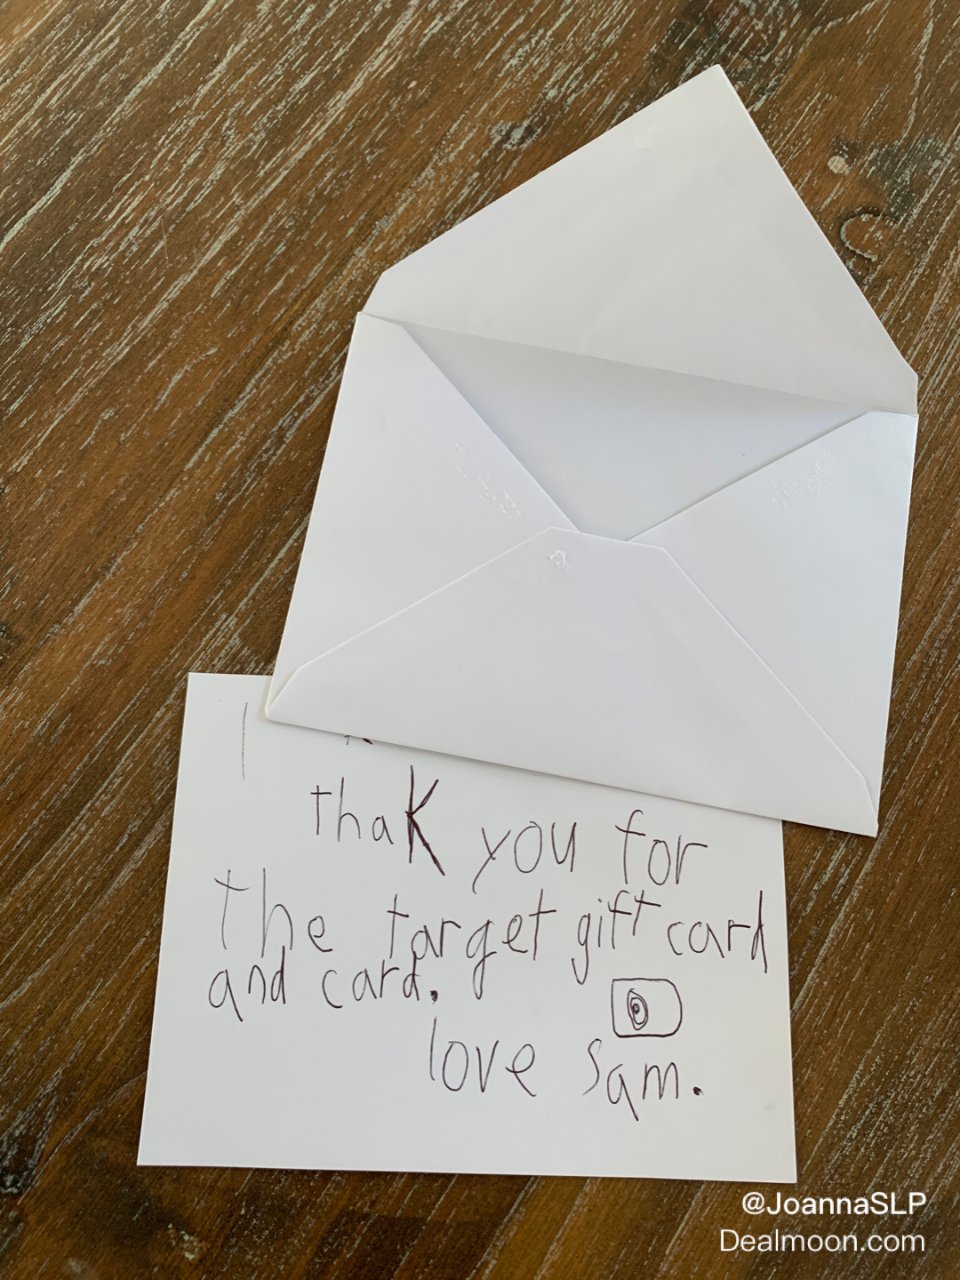 孩子的朋友写的感谢信...